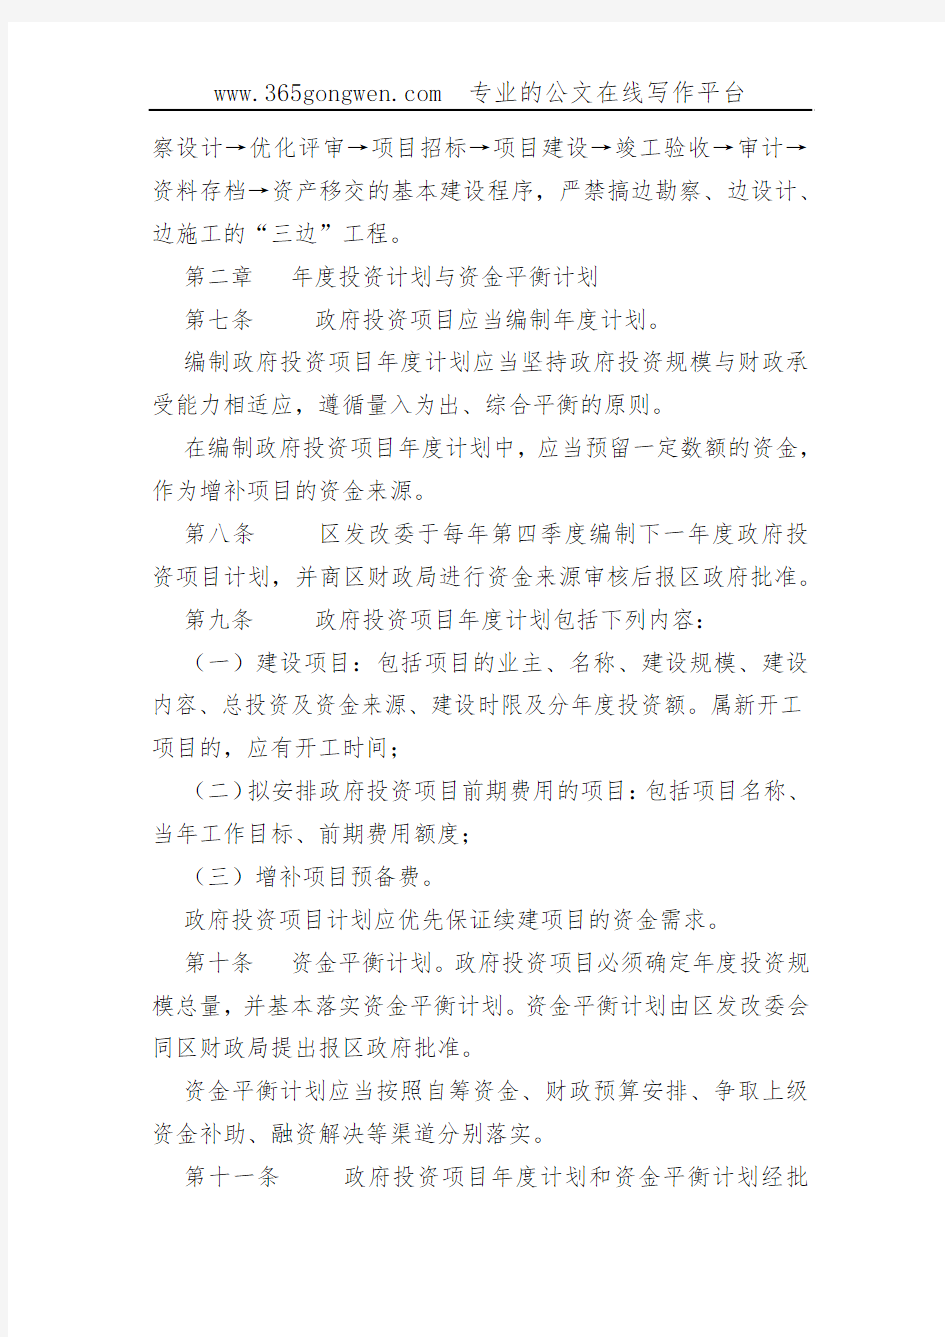 【发改办法】重庆市长寿区政府投资项目管理办法